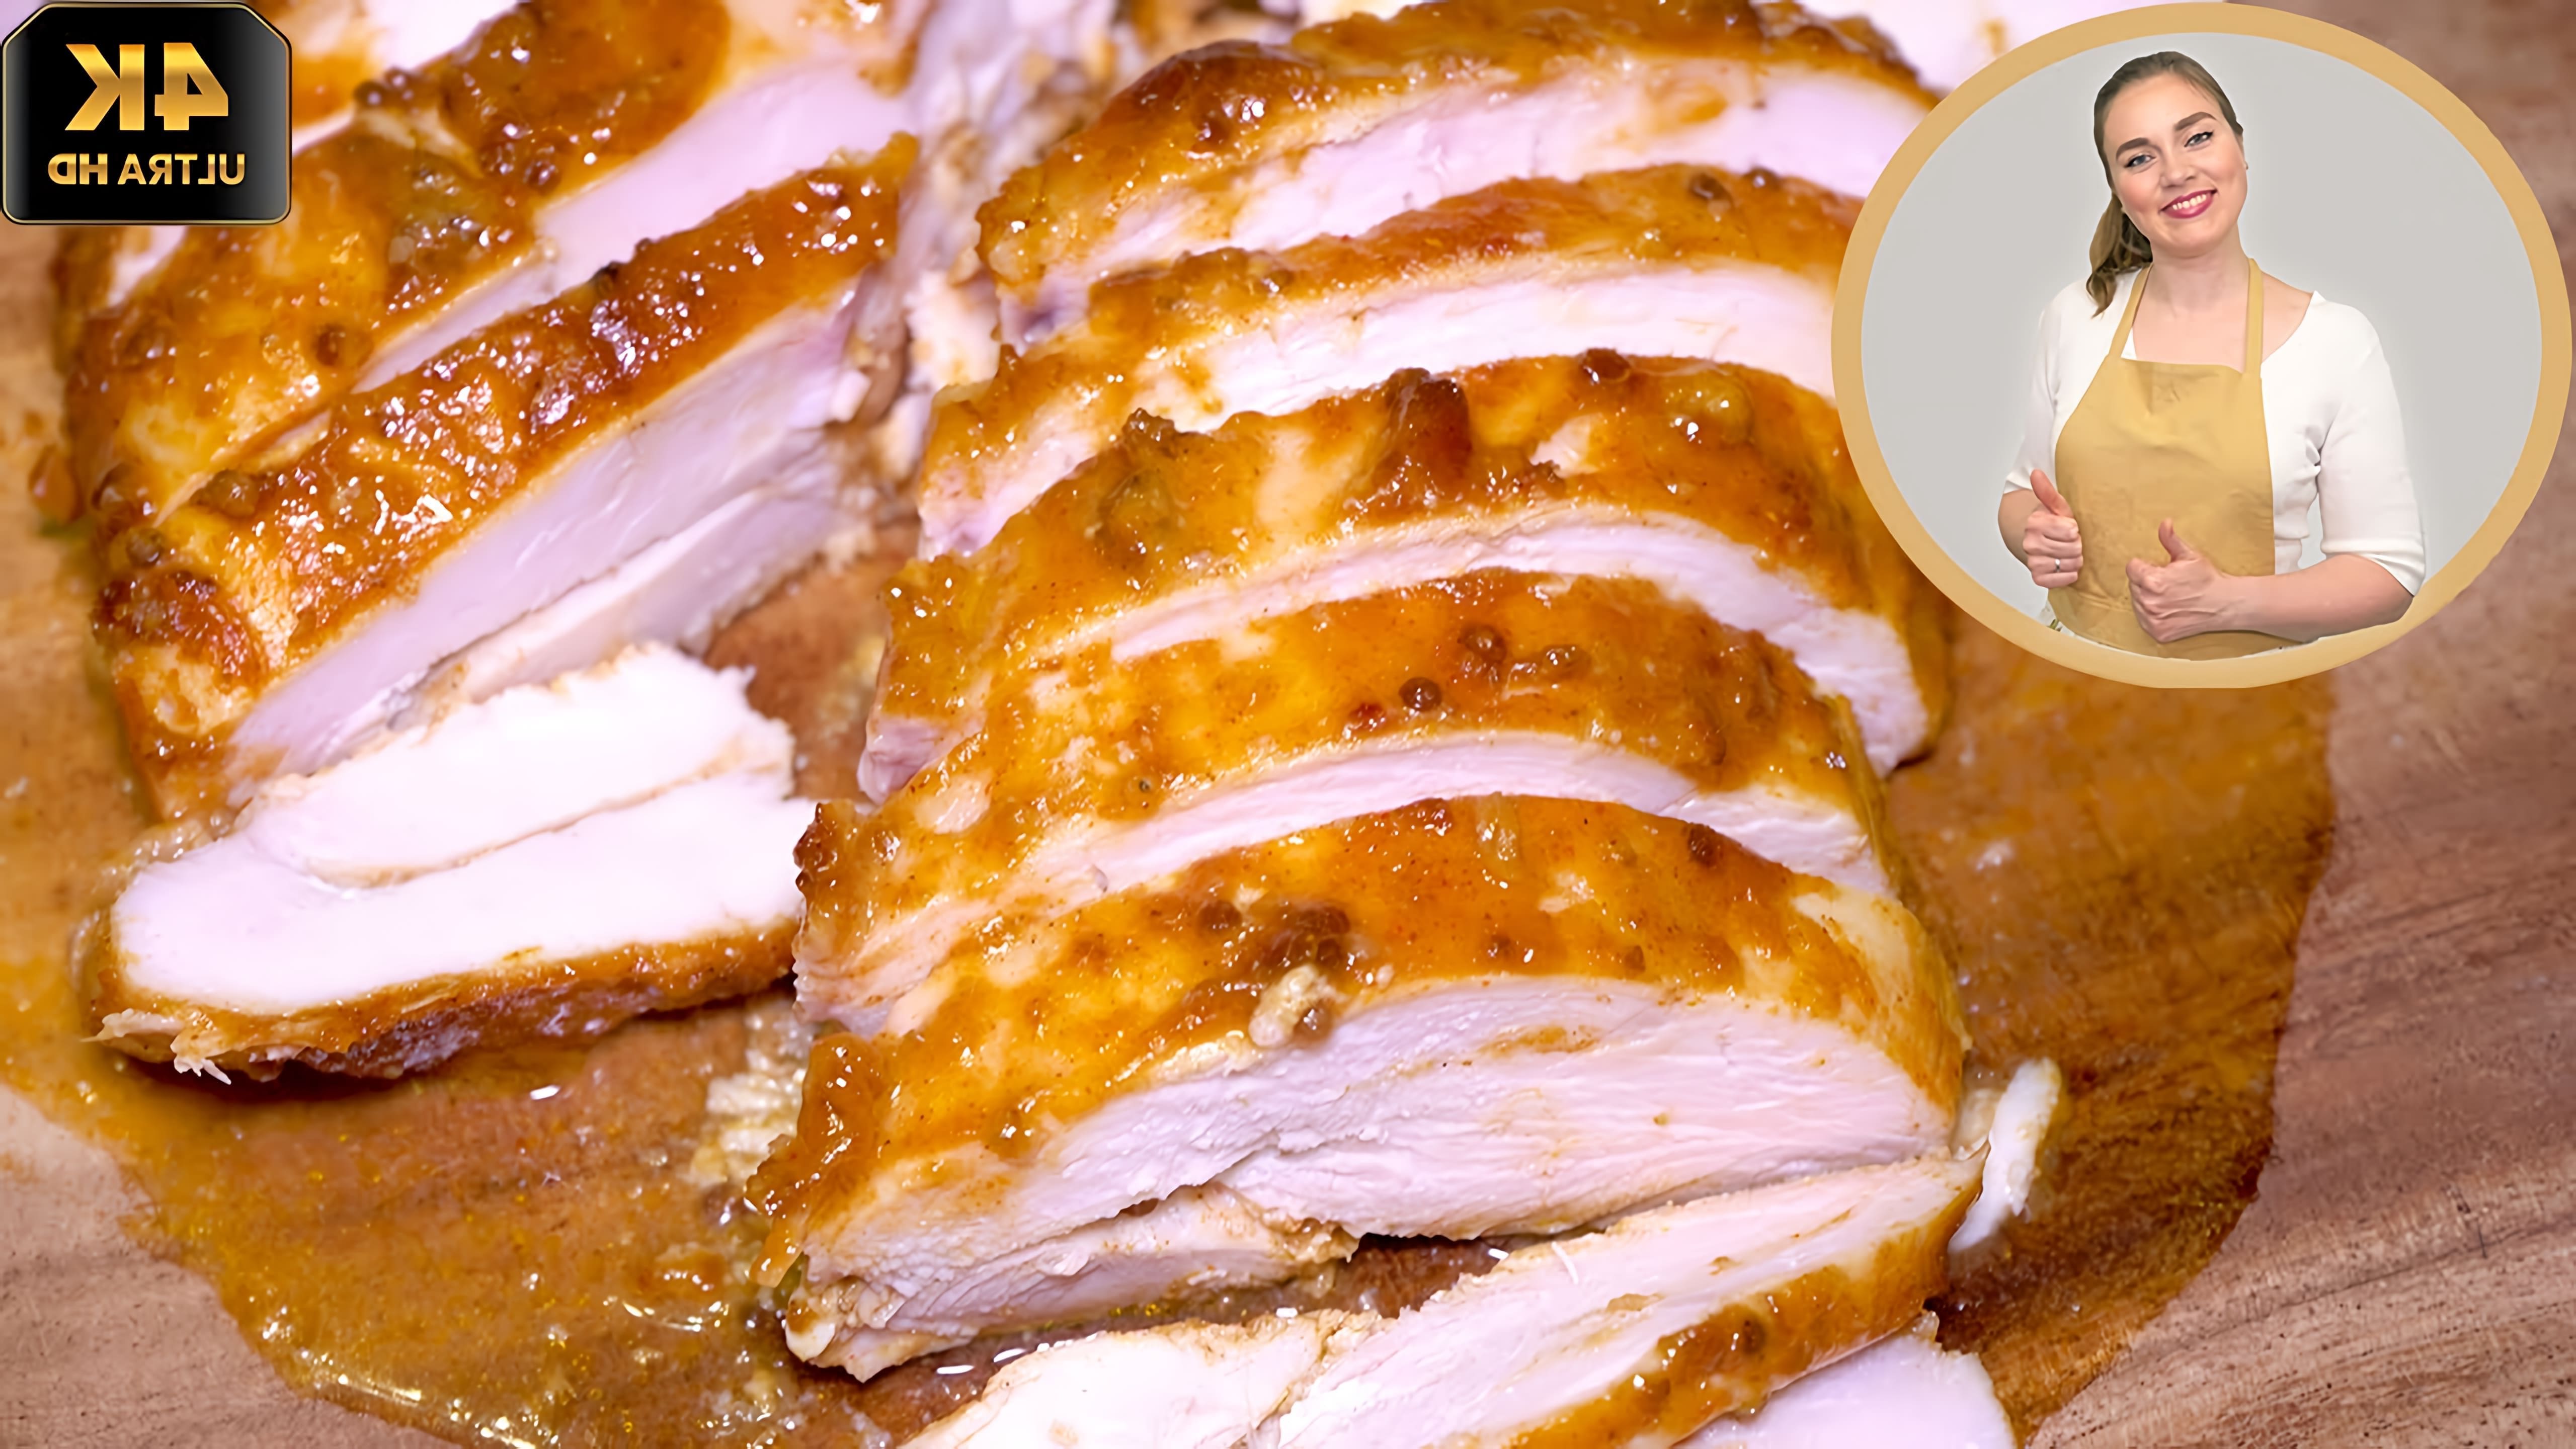 В этом видео демонстрируется процесс приготовления очень вкусной и сочной куриной грудки или куриного филе в духовке